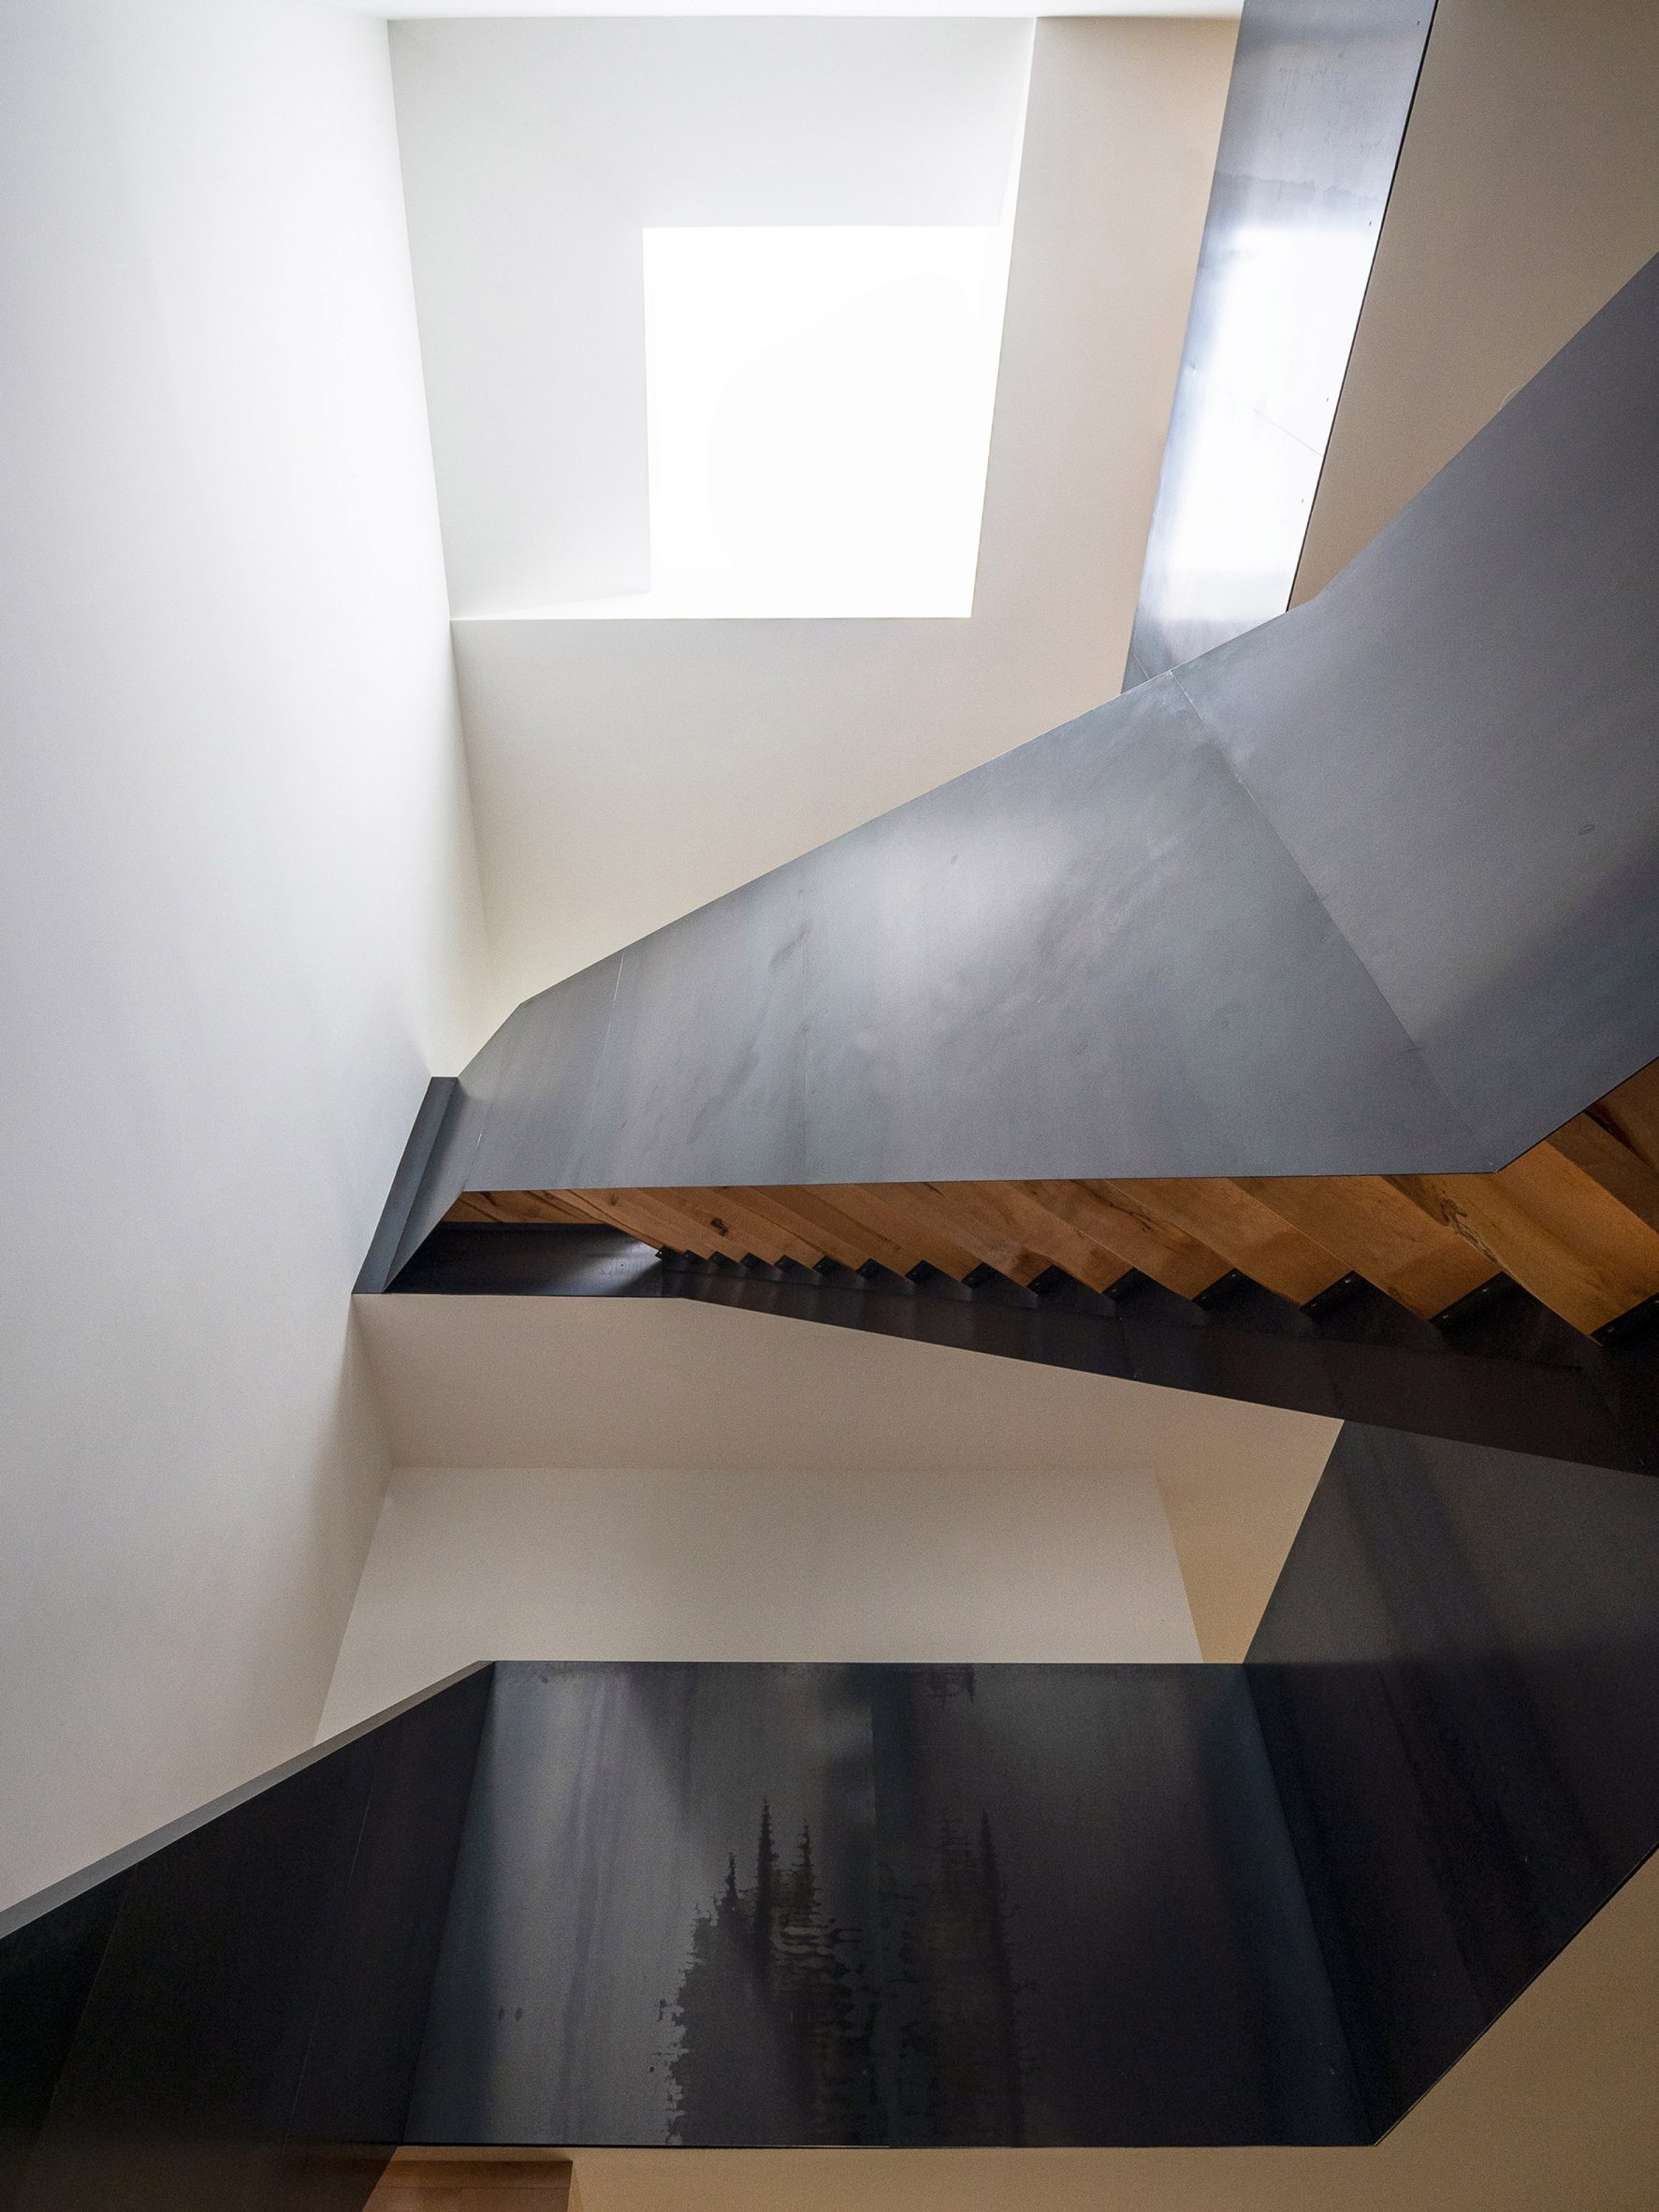 Escher-like staircase